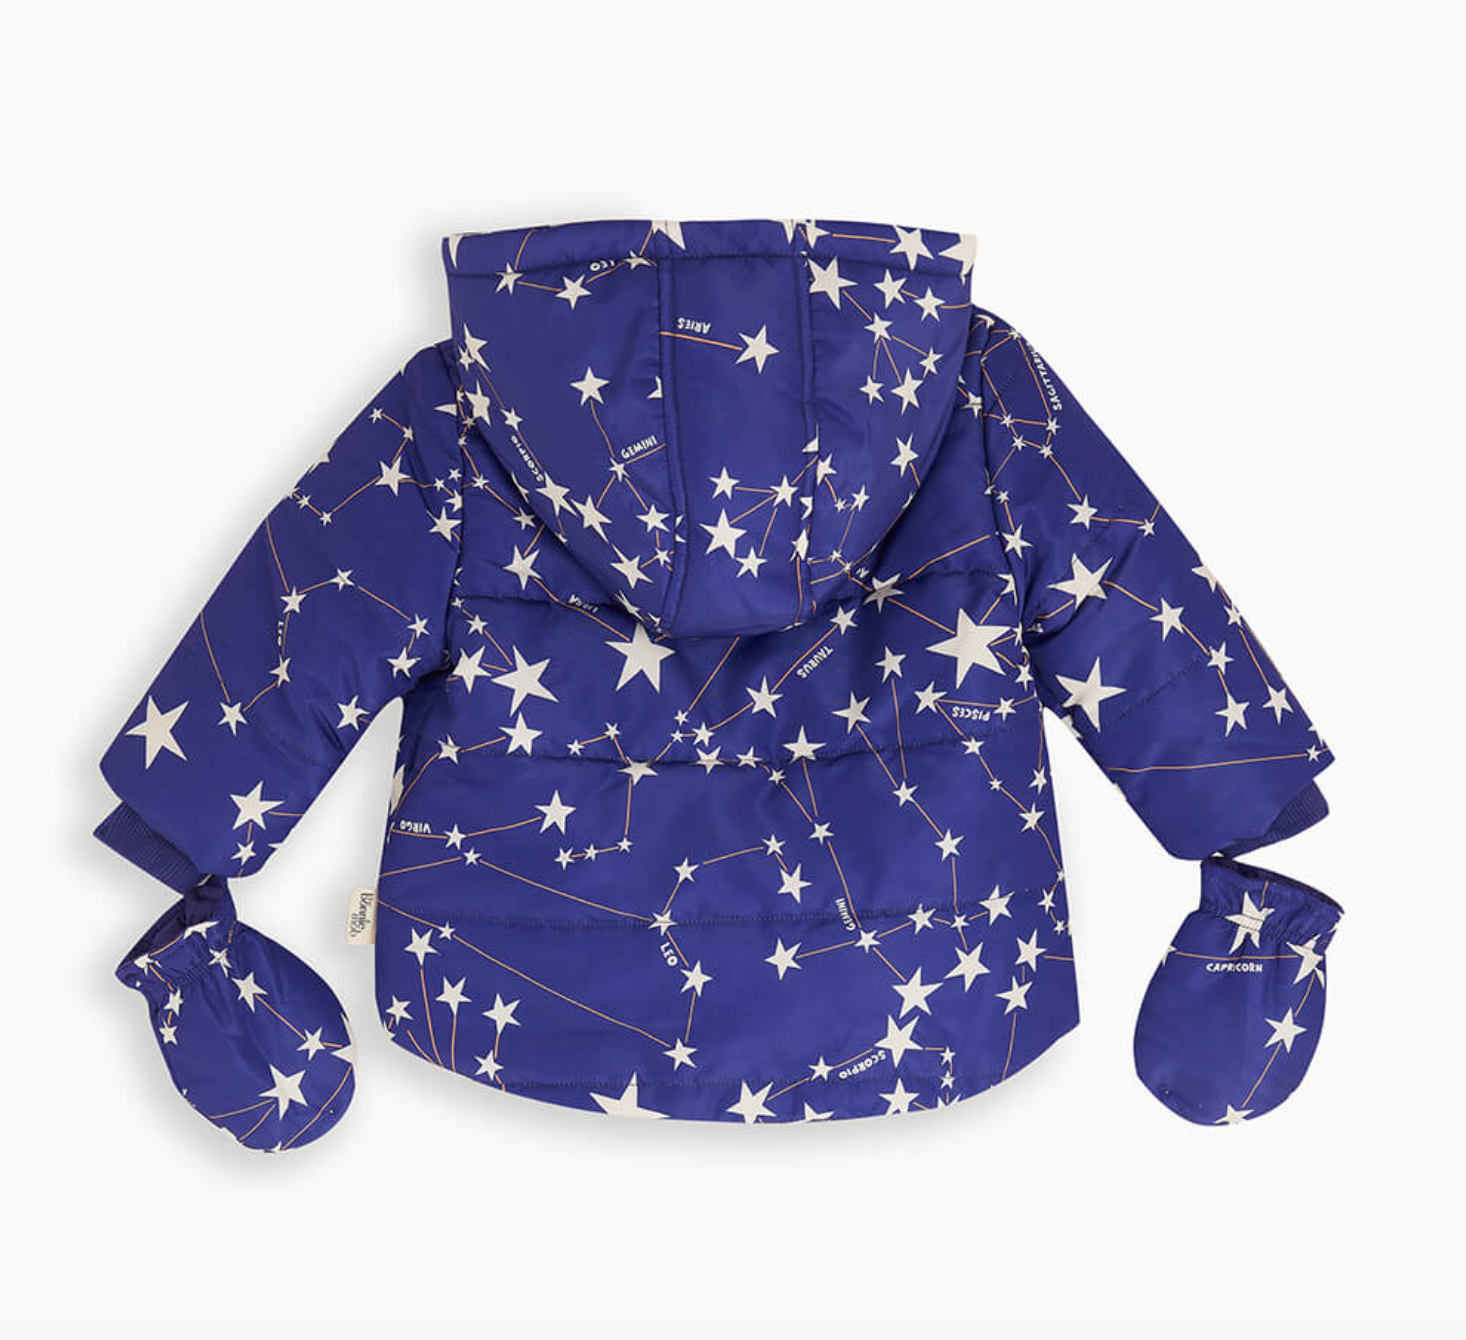 Bonnie Mob Jacket Kids - Navy Constellation